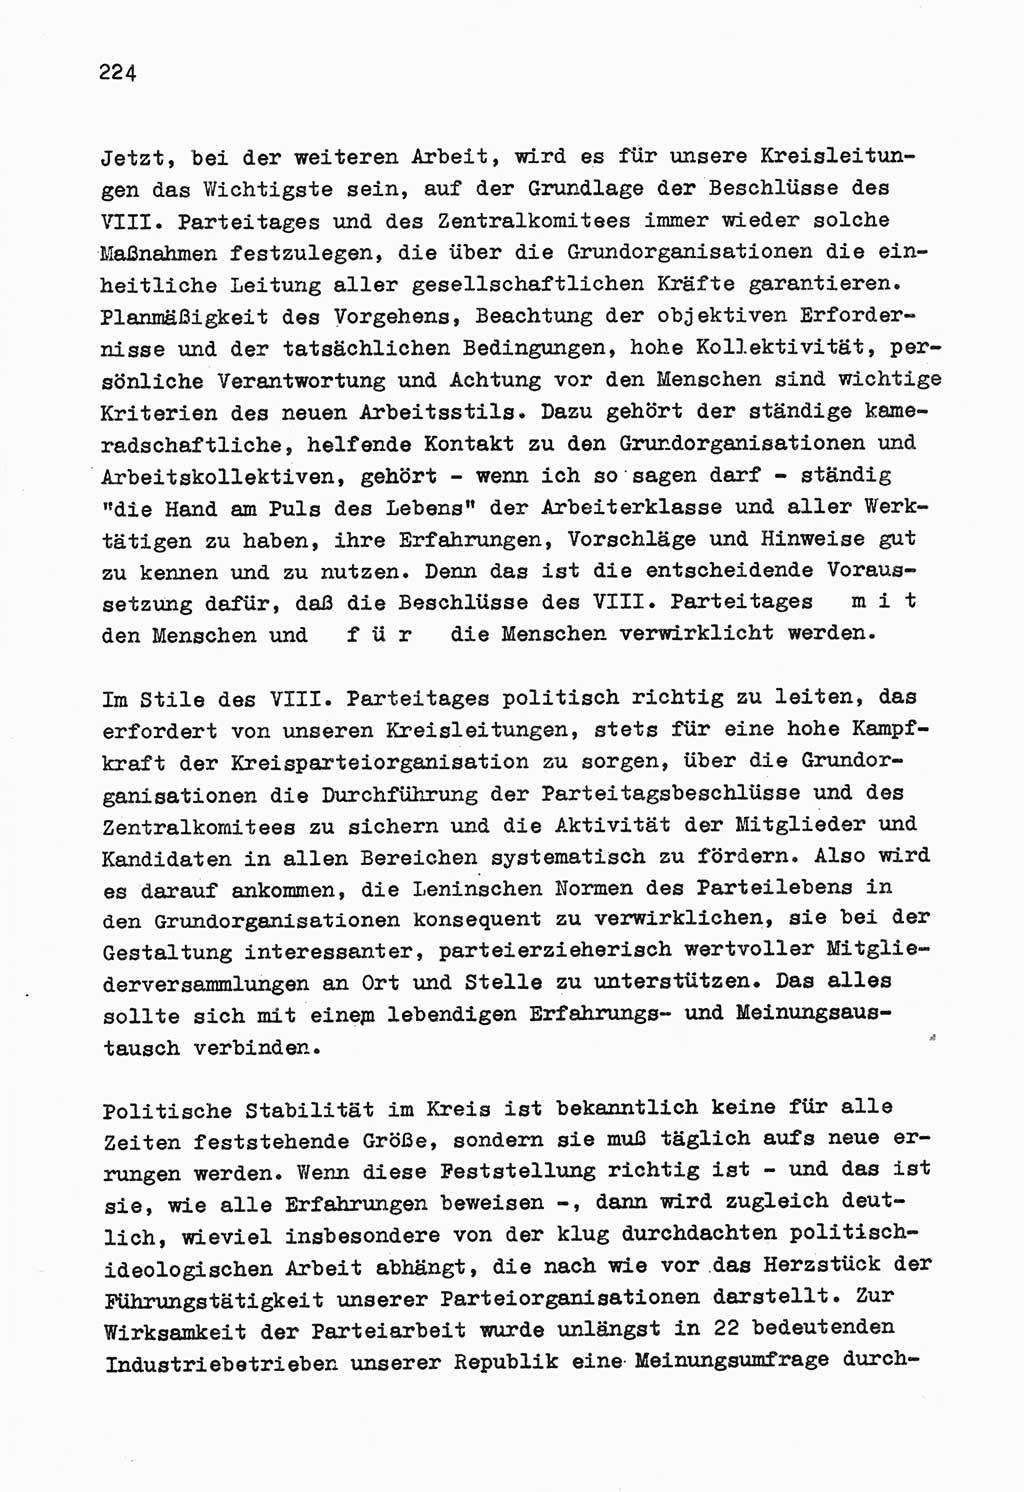 Zu Fragen der Parteiarbeit [Sozialistische Einheitspartei Deutschlands (SED) Deutsche Demokratische Republik (DDR)] 1979, Seite 224 (Fr. PA SED DDR 1979, S. 224)